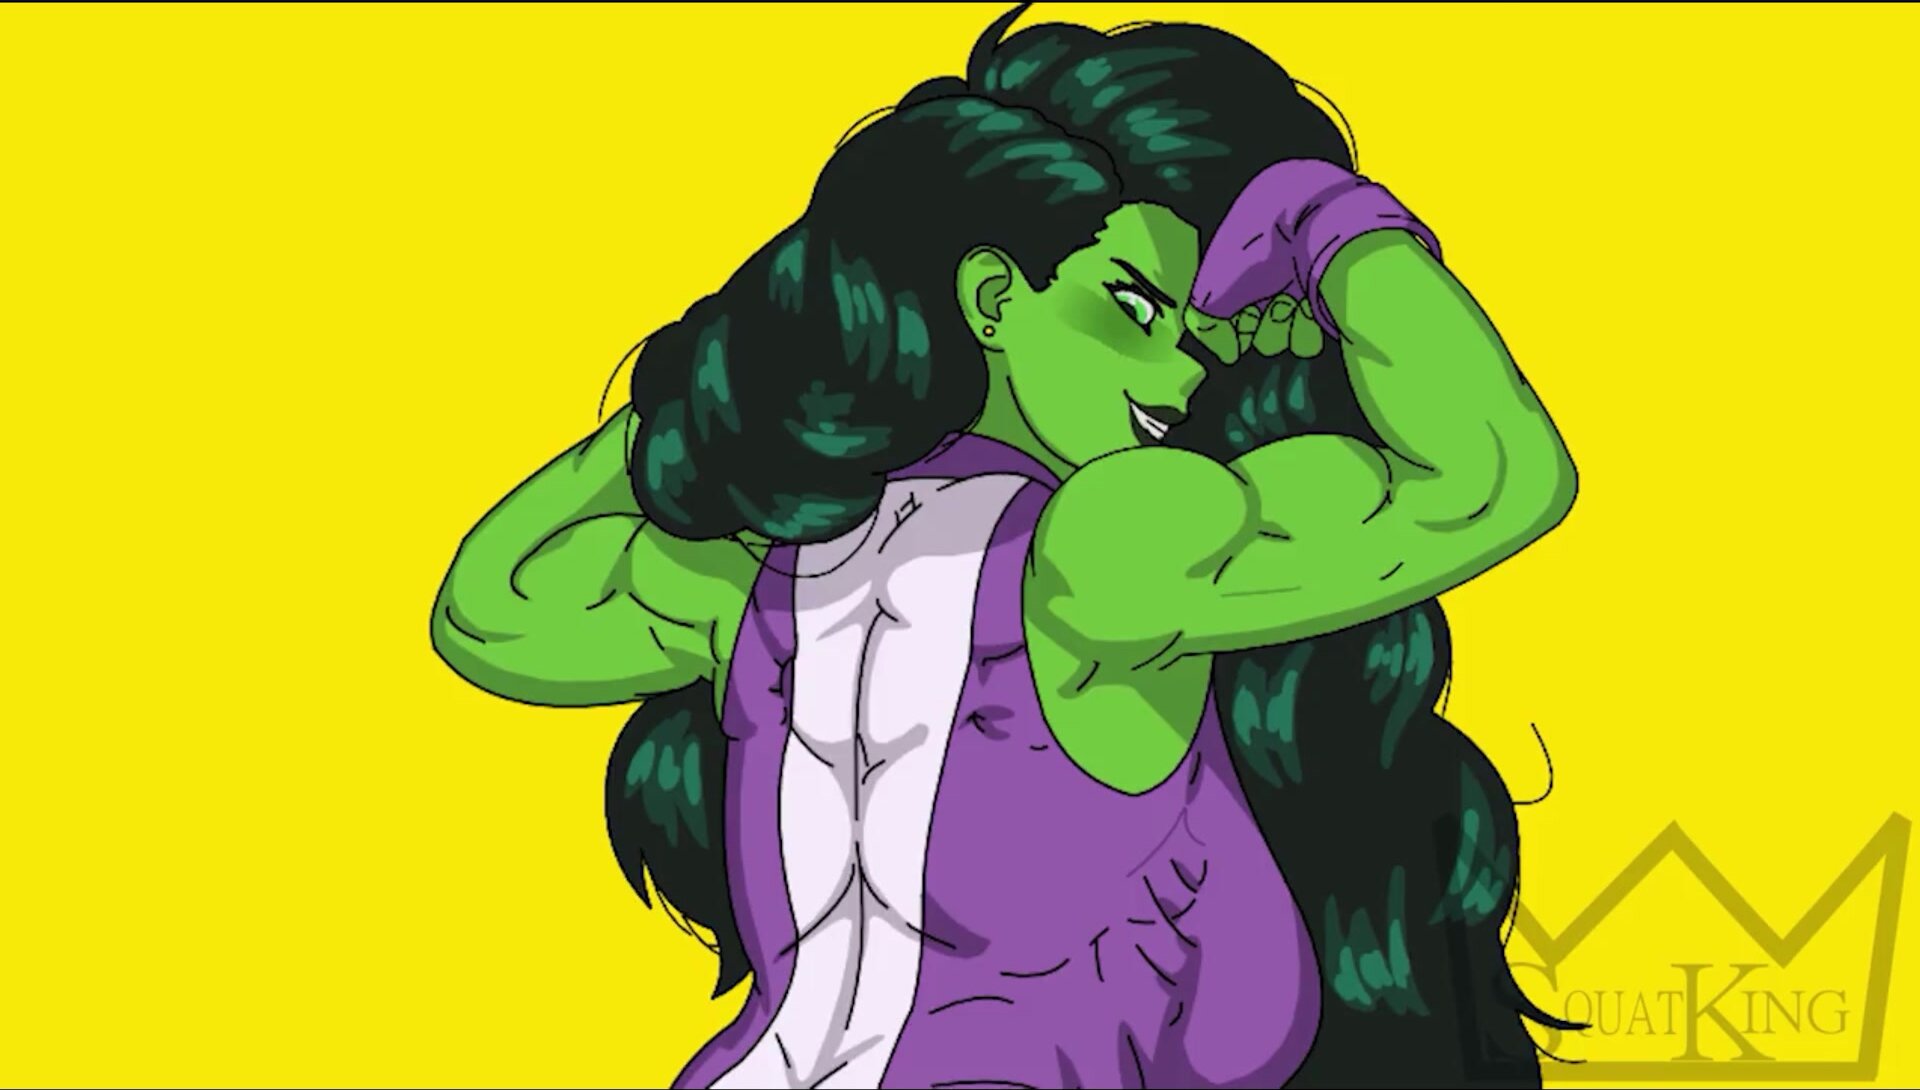 She-Hulk Squat